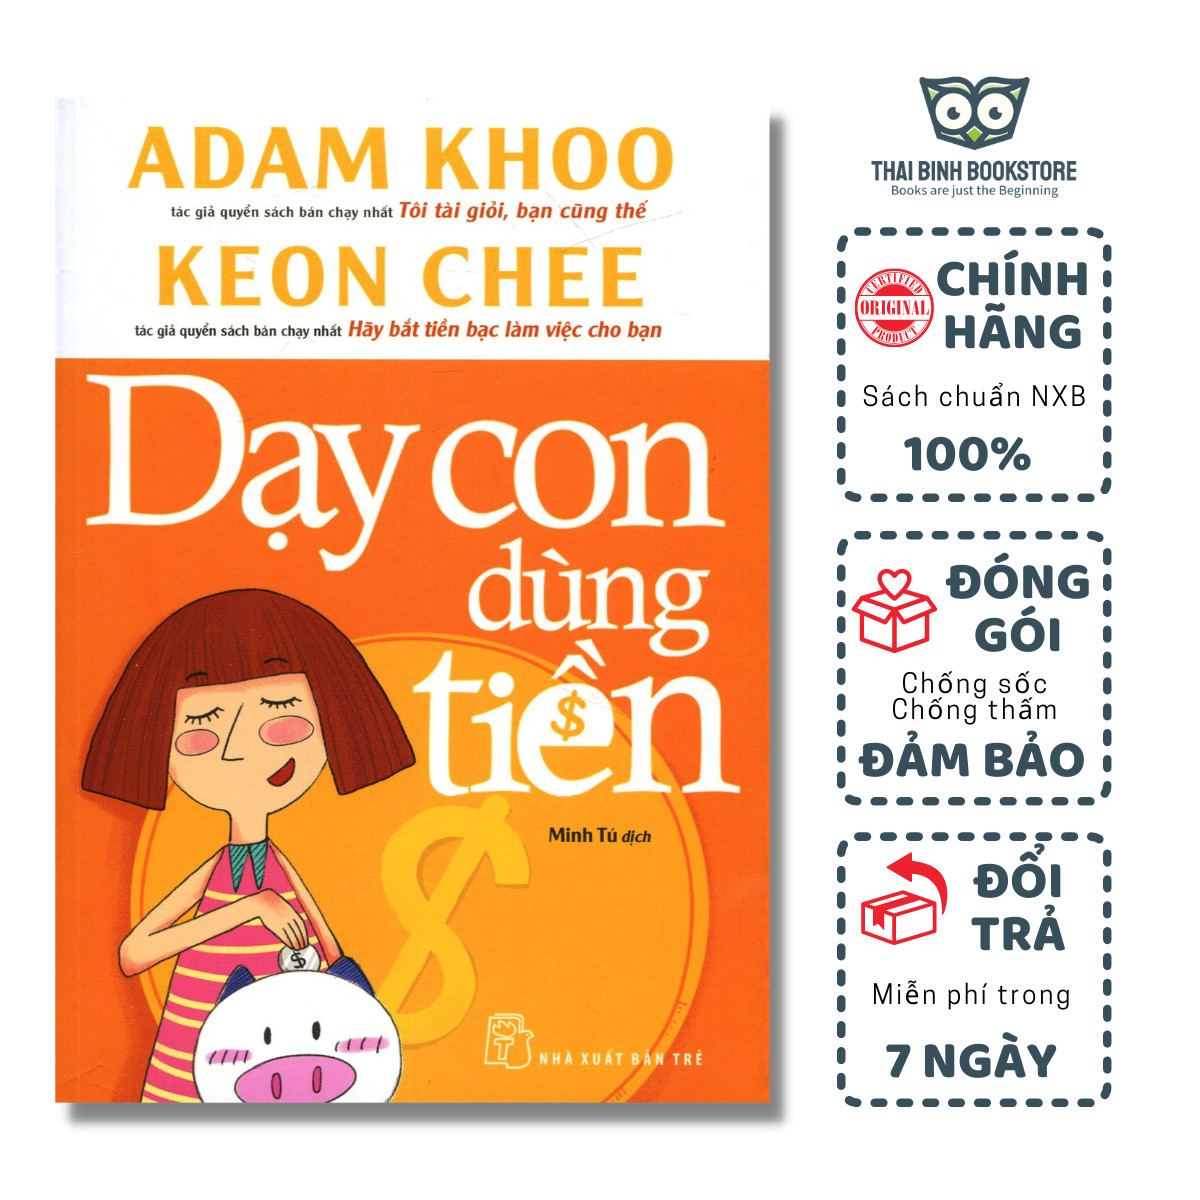 Sách - Dạy Con Dùng Tiền - Adam Khoo, Keon Chee - Thái Bình Bookstore